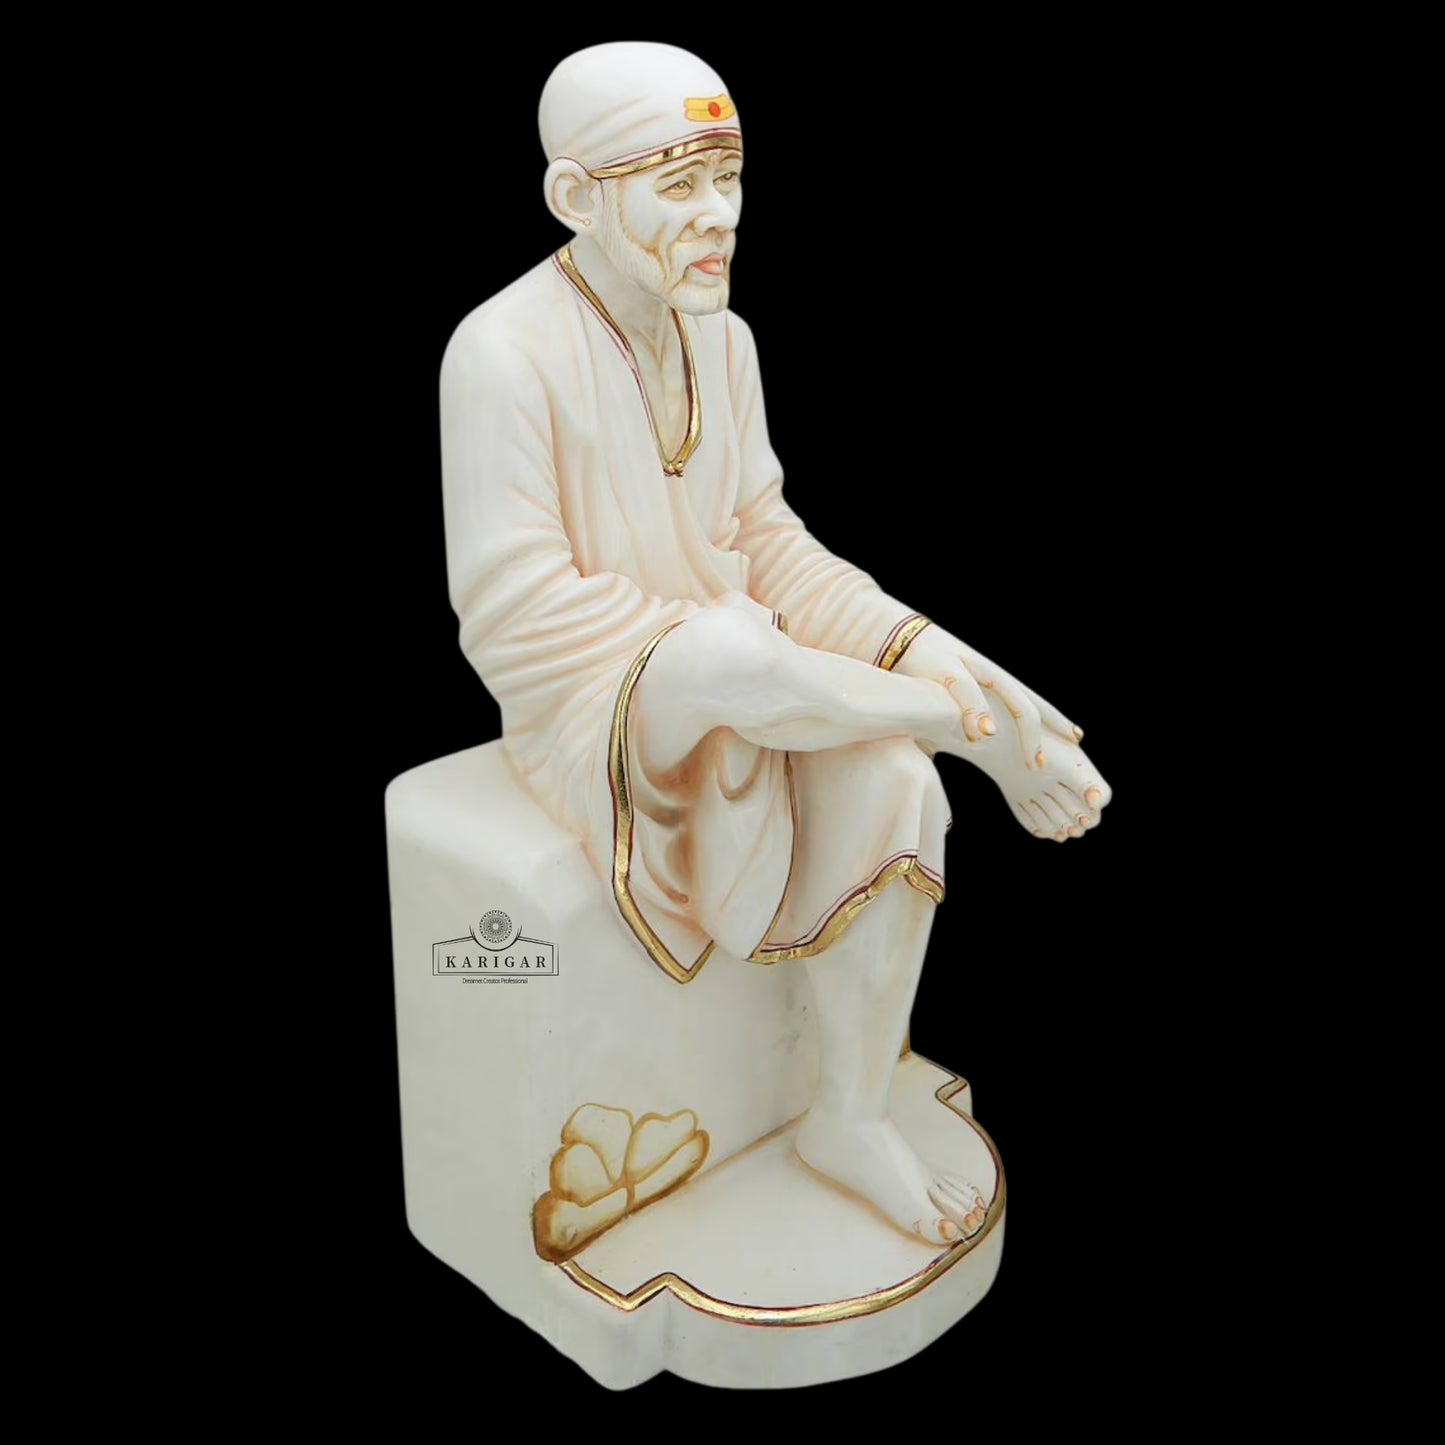 Estatua de Sai Baba Gran ídolo de Sai Baba de mármol, estatua divina, figura de Sai Baba, Shirdi Sai Baba, estatua de Sai Baba de mármol puro, Sri DattaGuru (15 pulgadas) (18 pulgadas)